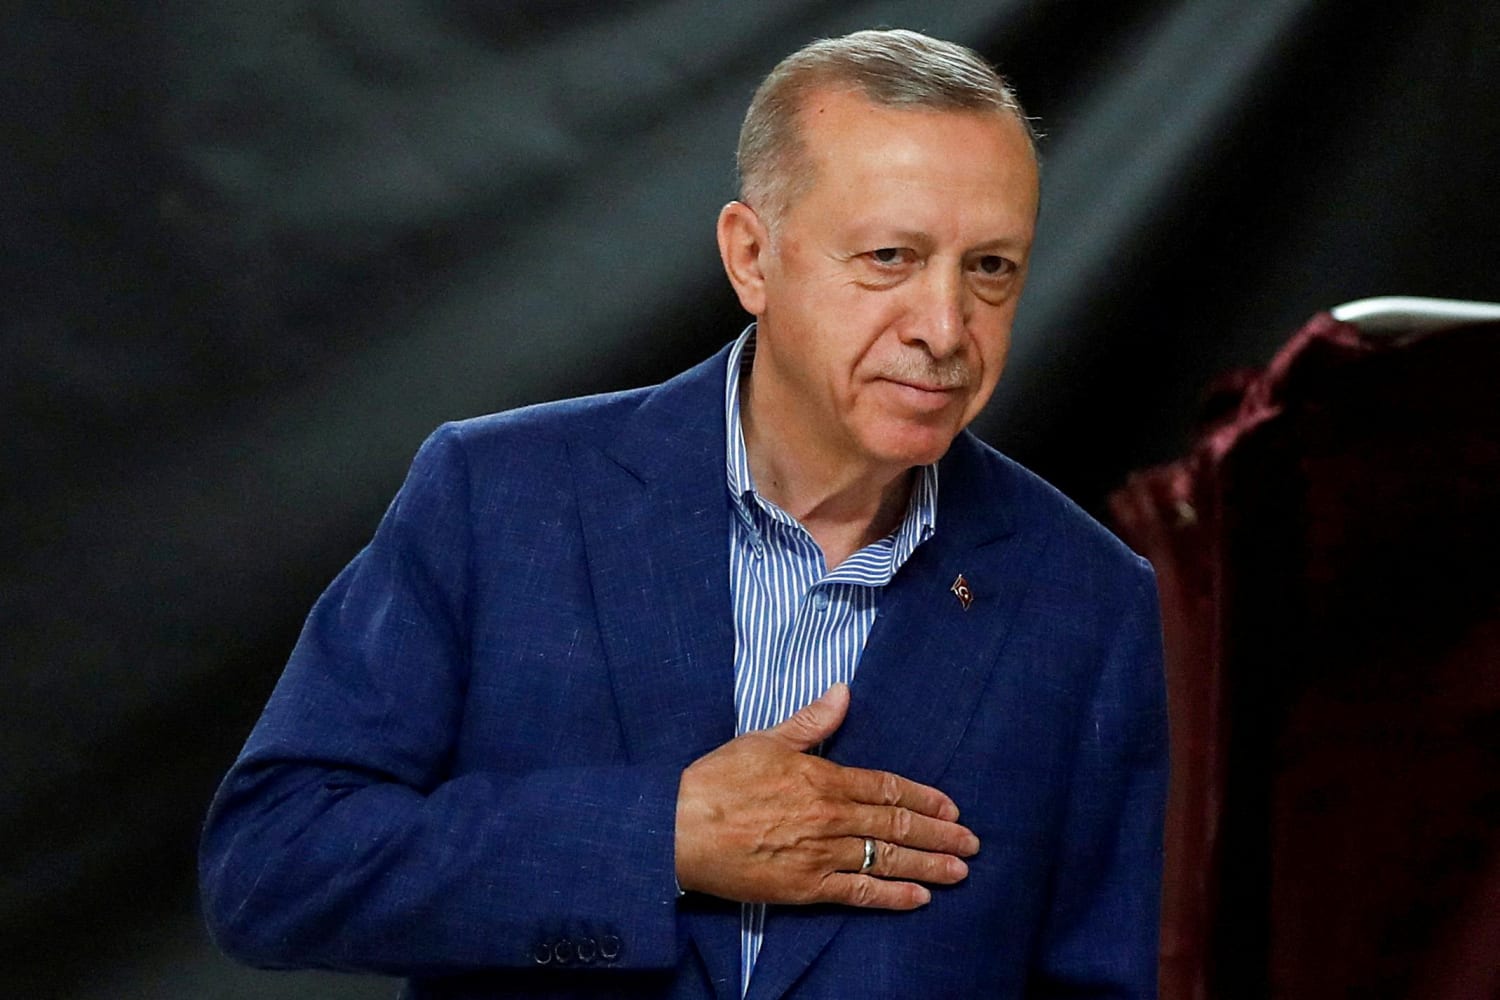 Erdoğan looks to extend his 20-year rule as Turkey votes in presidential runoff